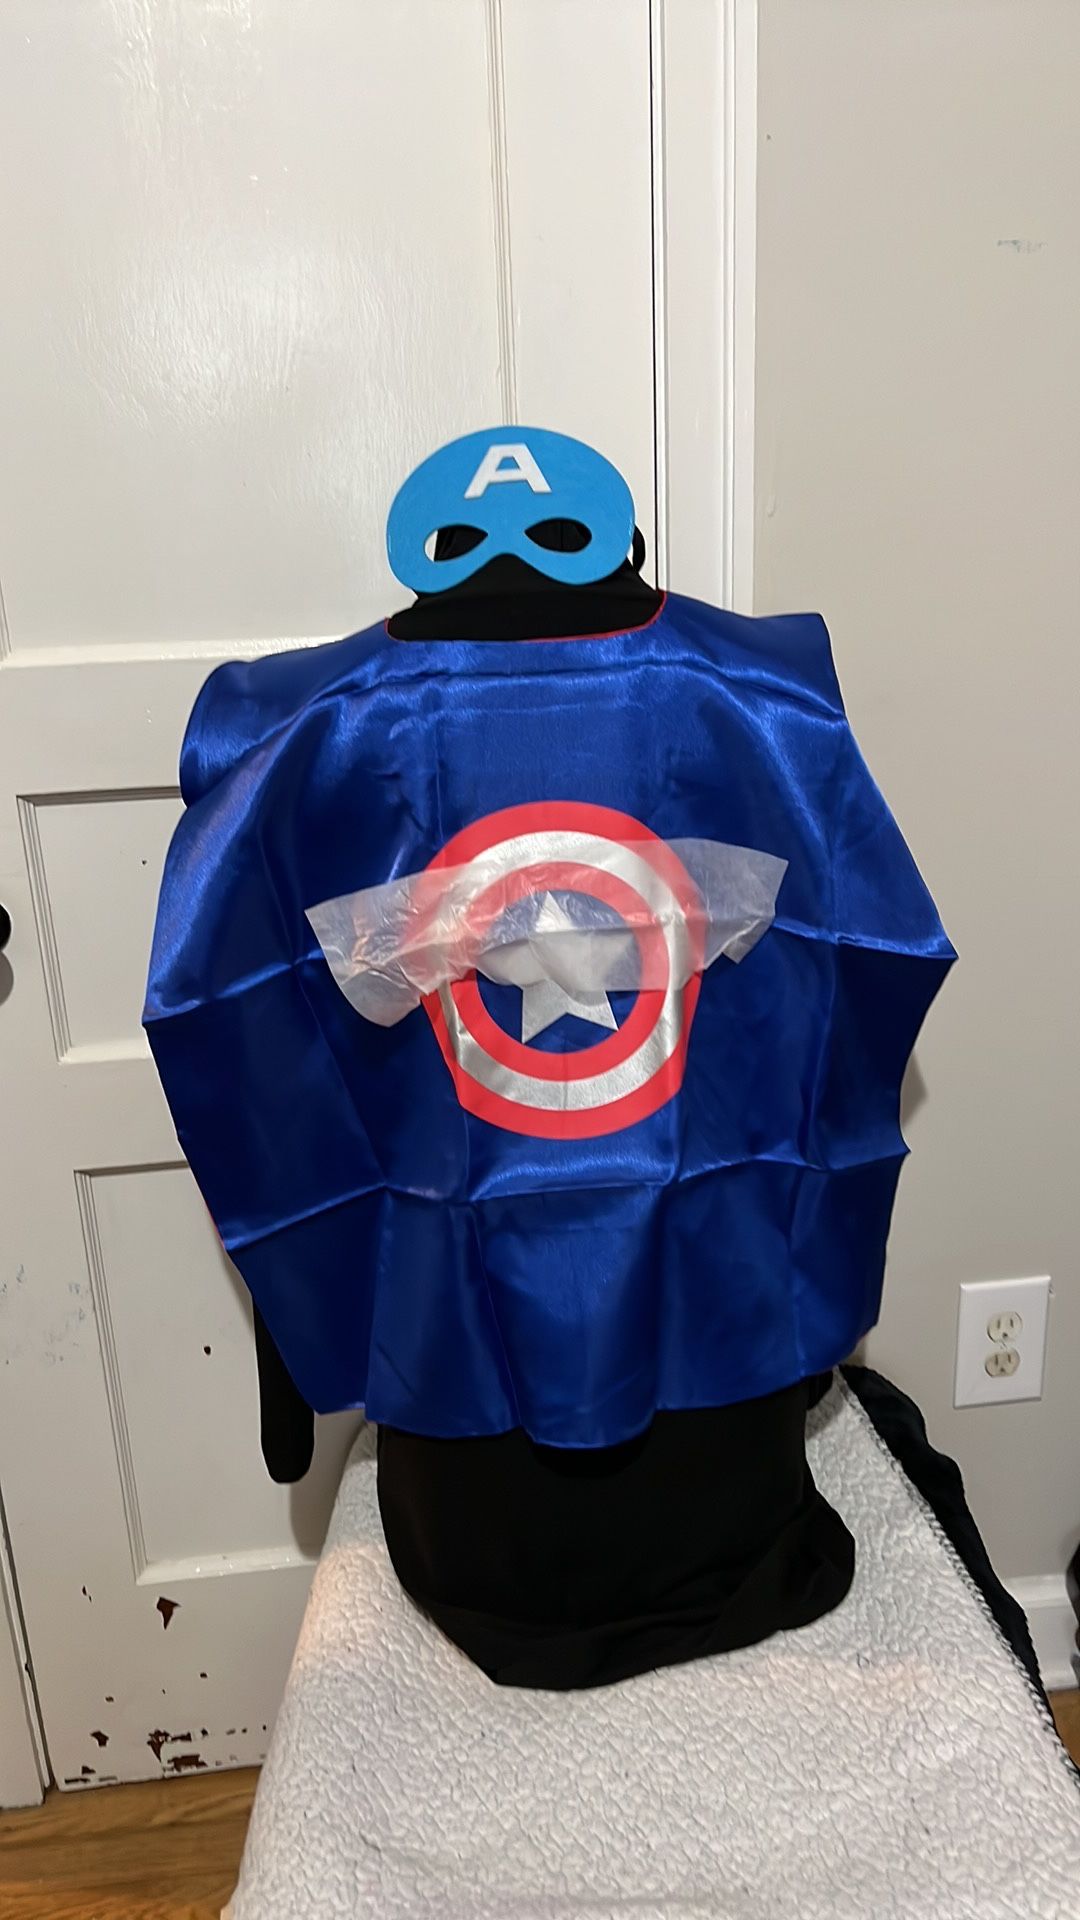 NWOT Superhero Captain America Satin cap and mask